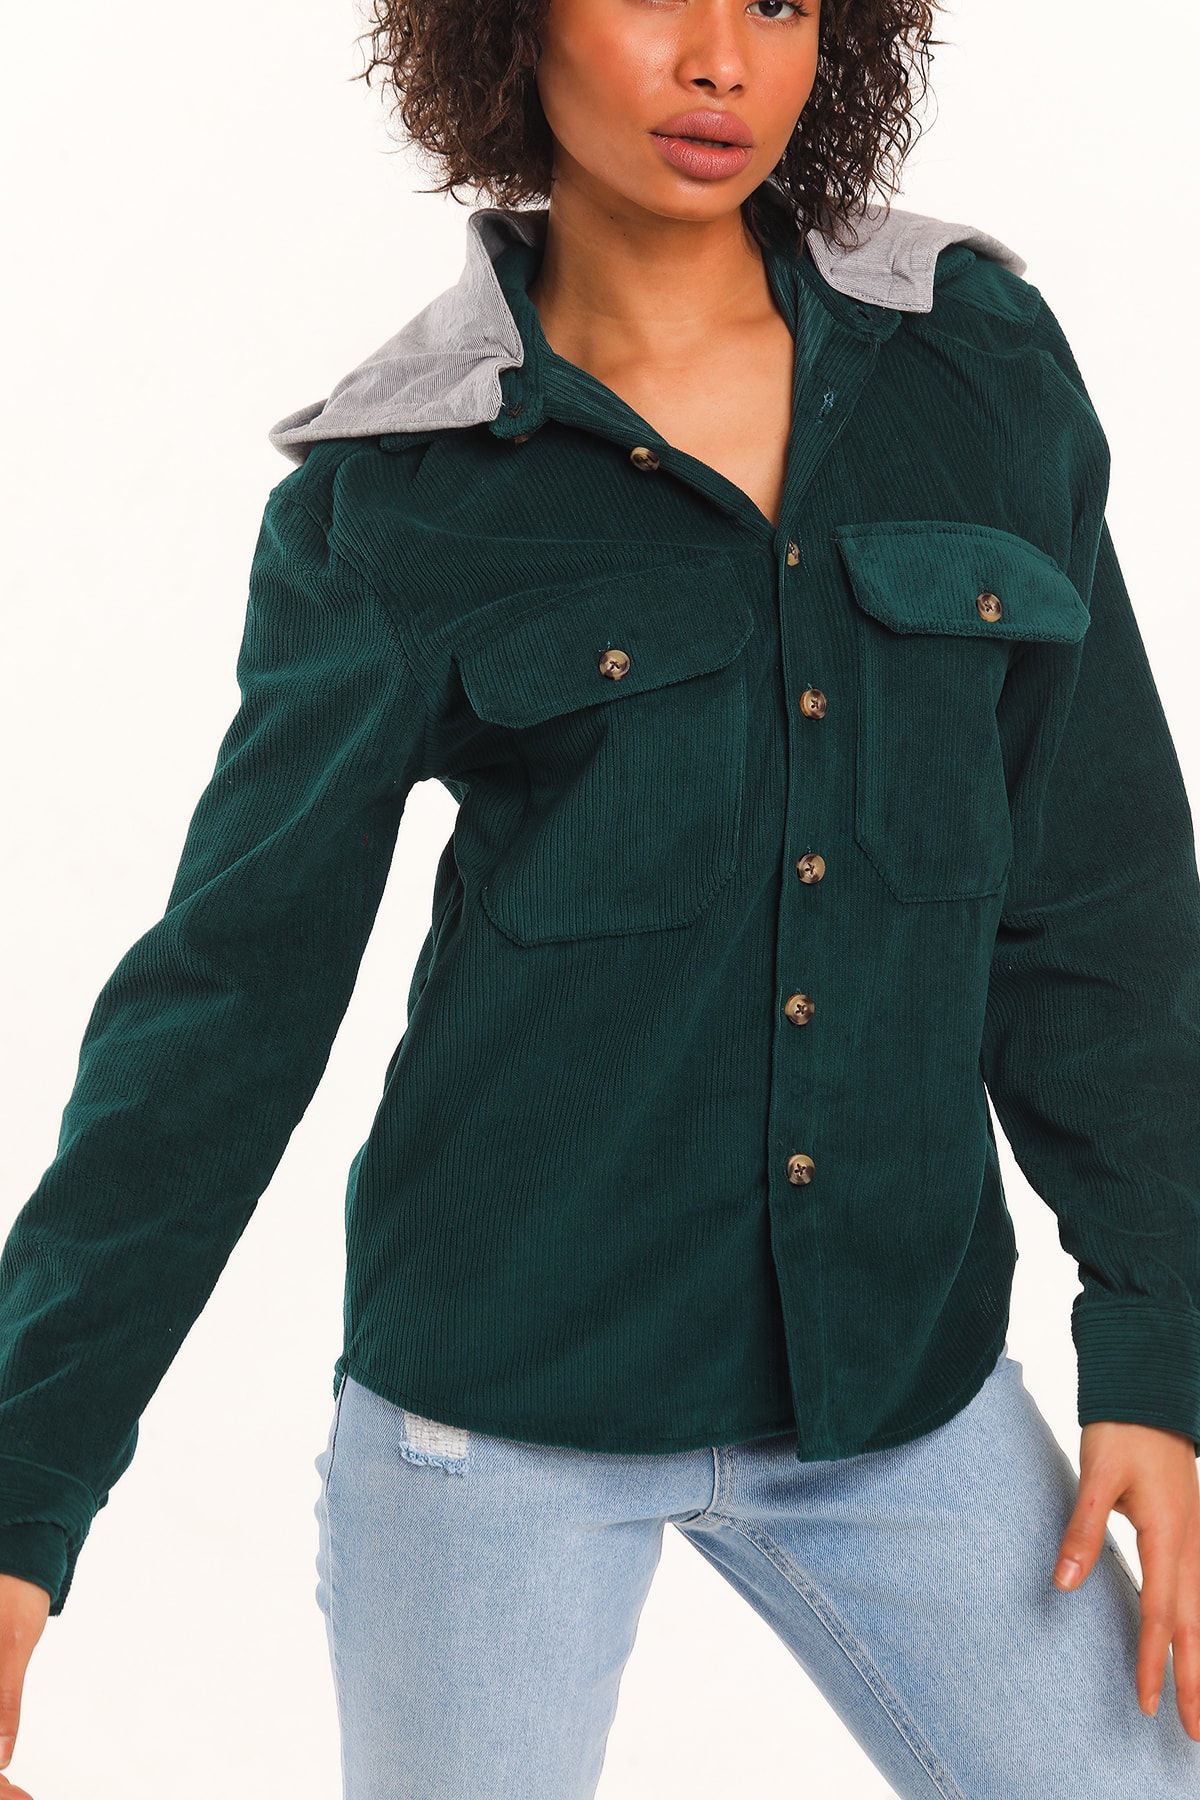 MODASMA Yeşil Kadife Düğmeli Kapüşonlu Regular Fit Vintage Ceket